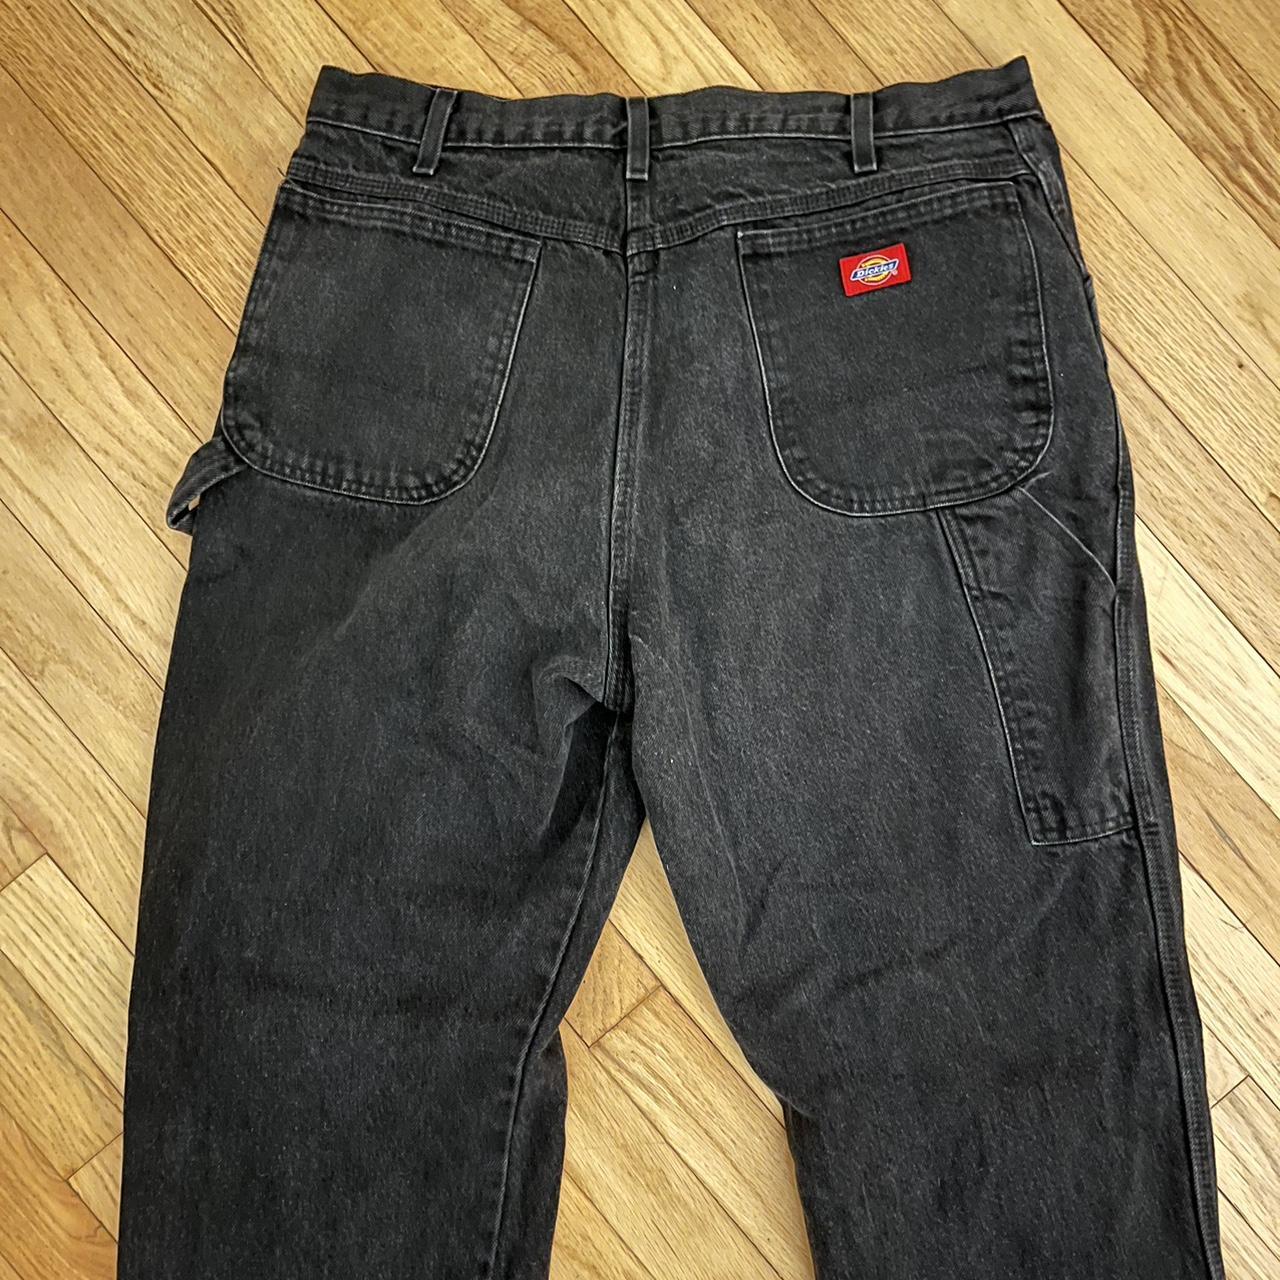 Dickies black carpenter jeans 36/34 #Dickies... - Depop